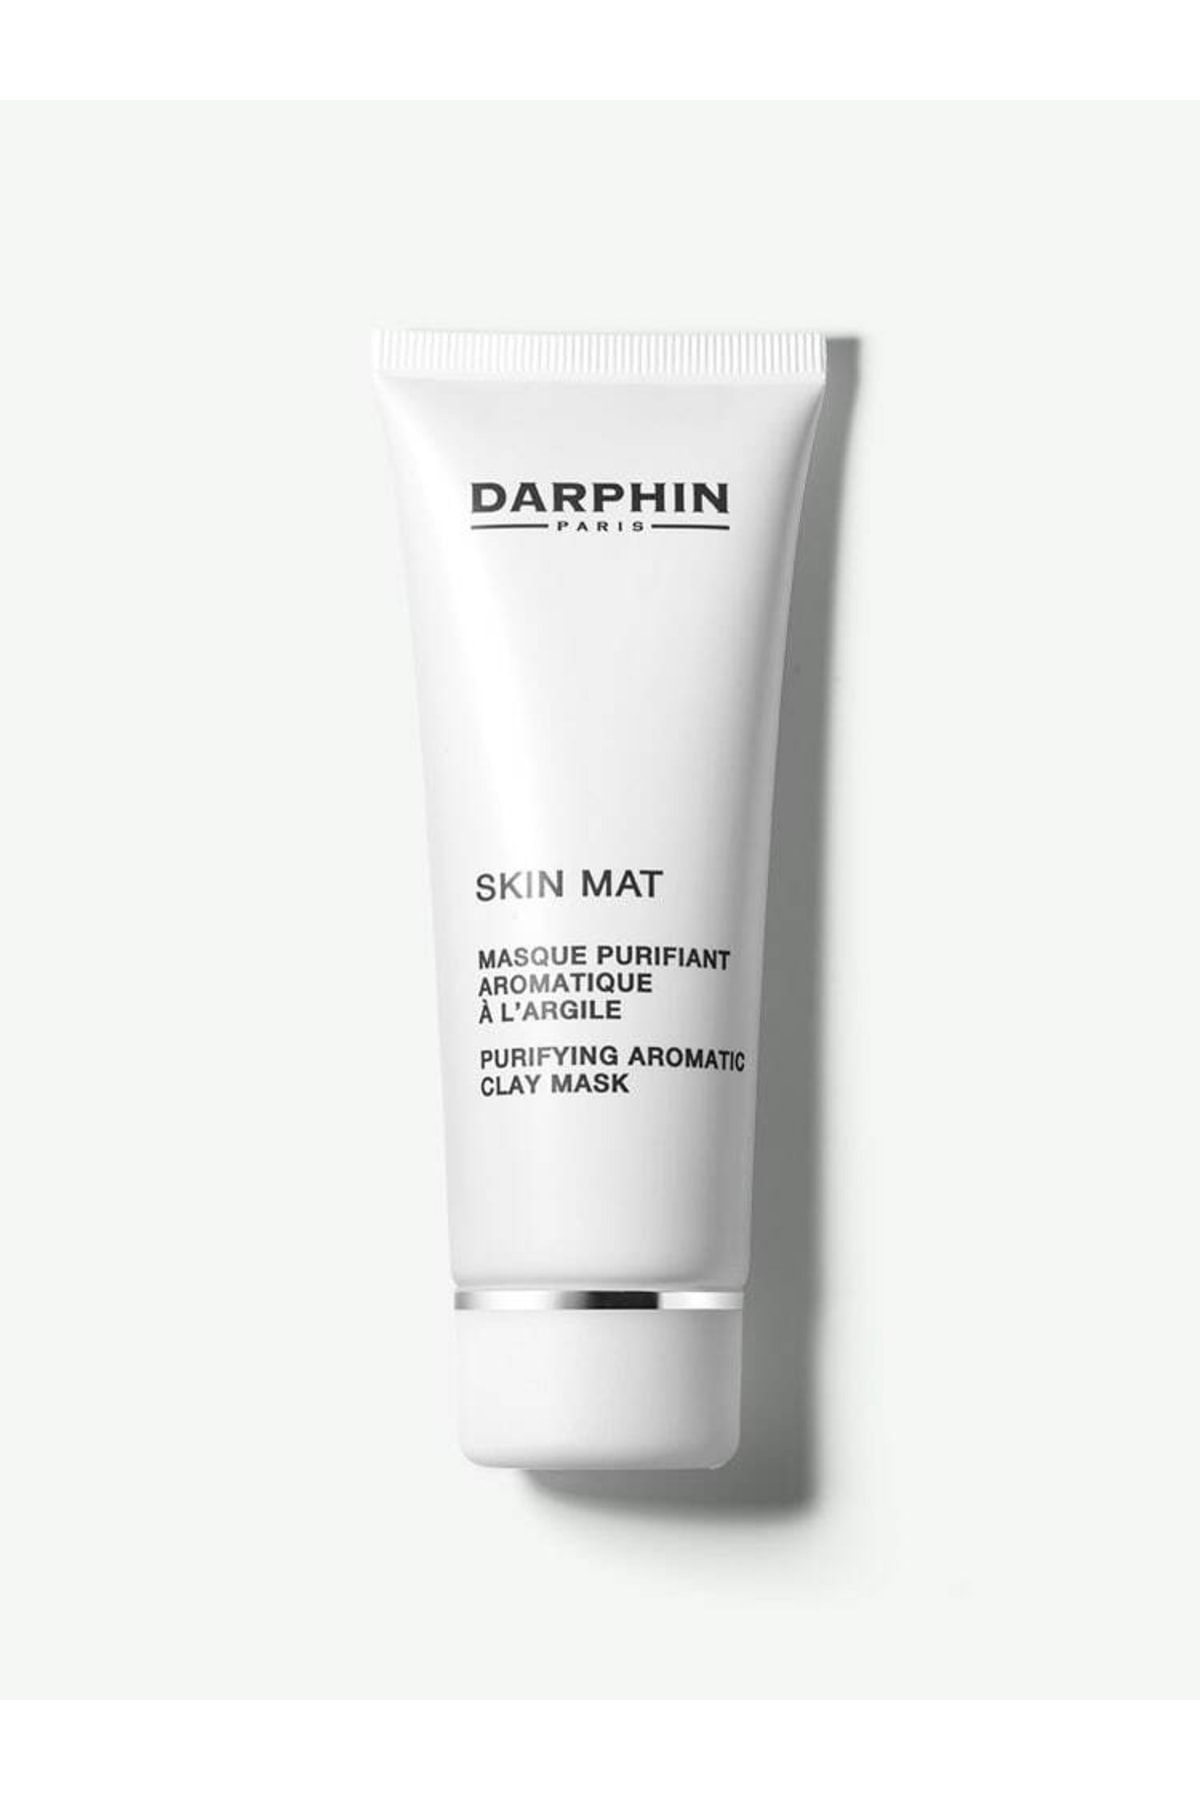 Darphin Arındırıcı Kil Maskesi- Skin Mat Purifying Aromatic Clay Mask 75 ml 882381053888